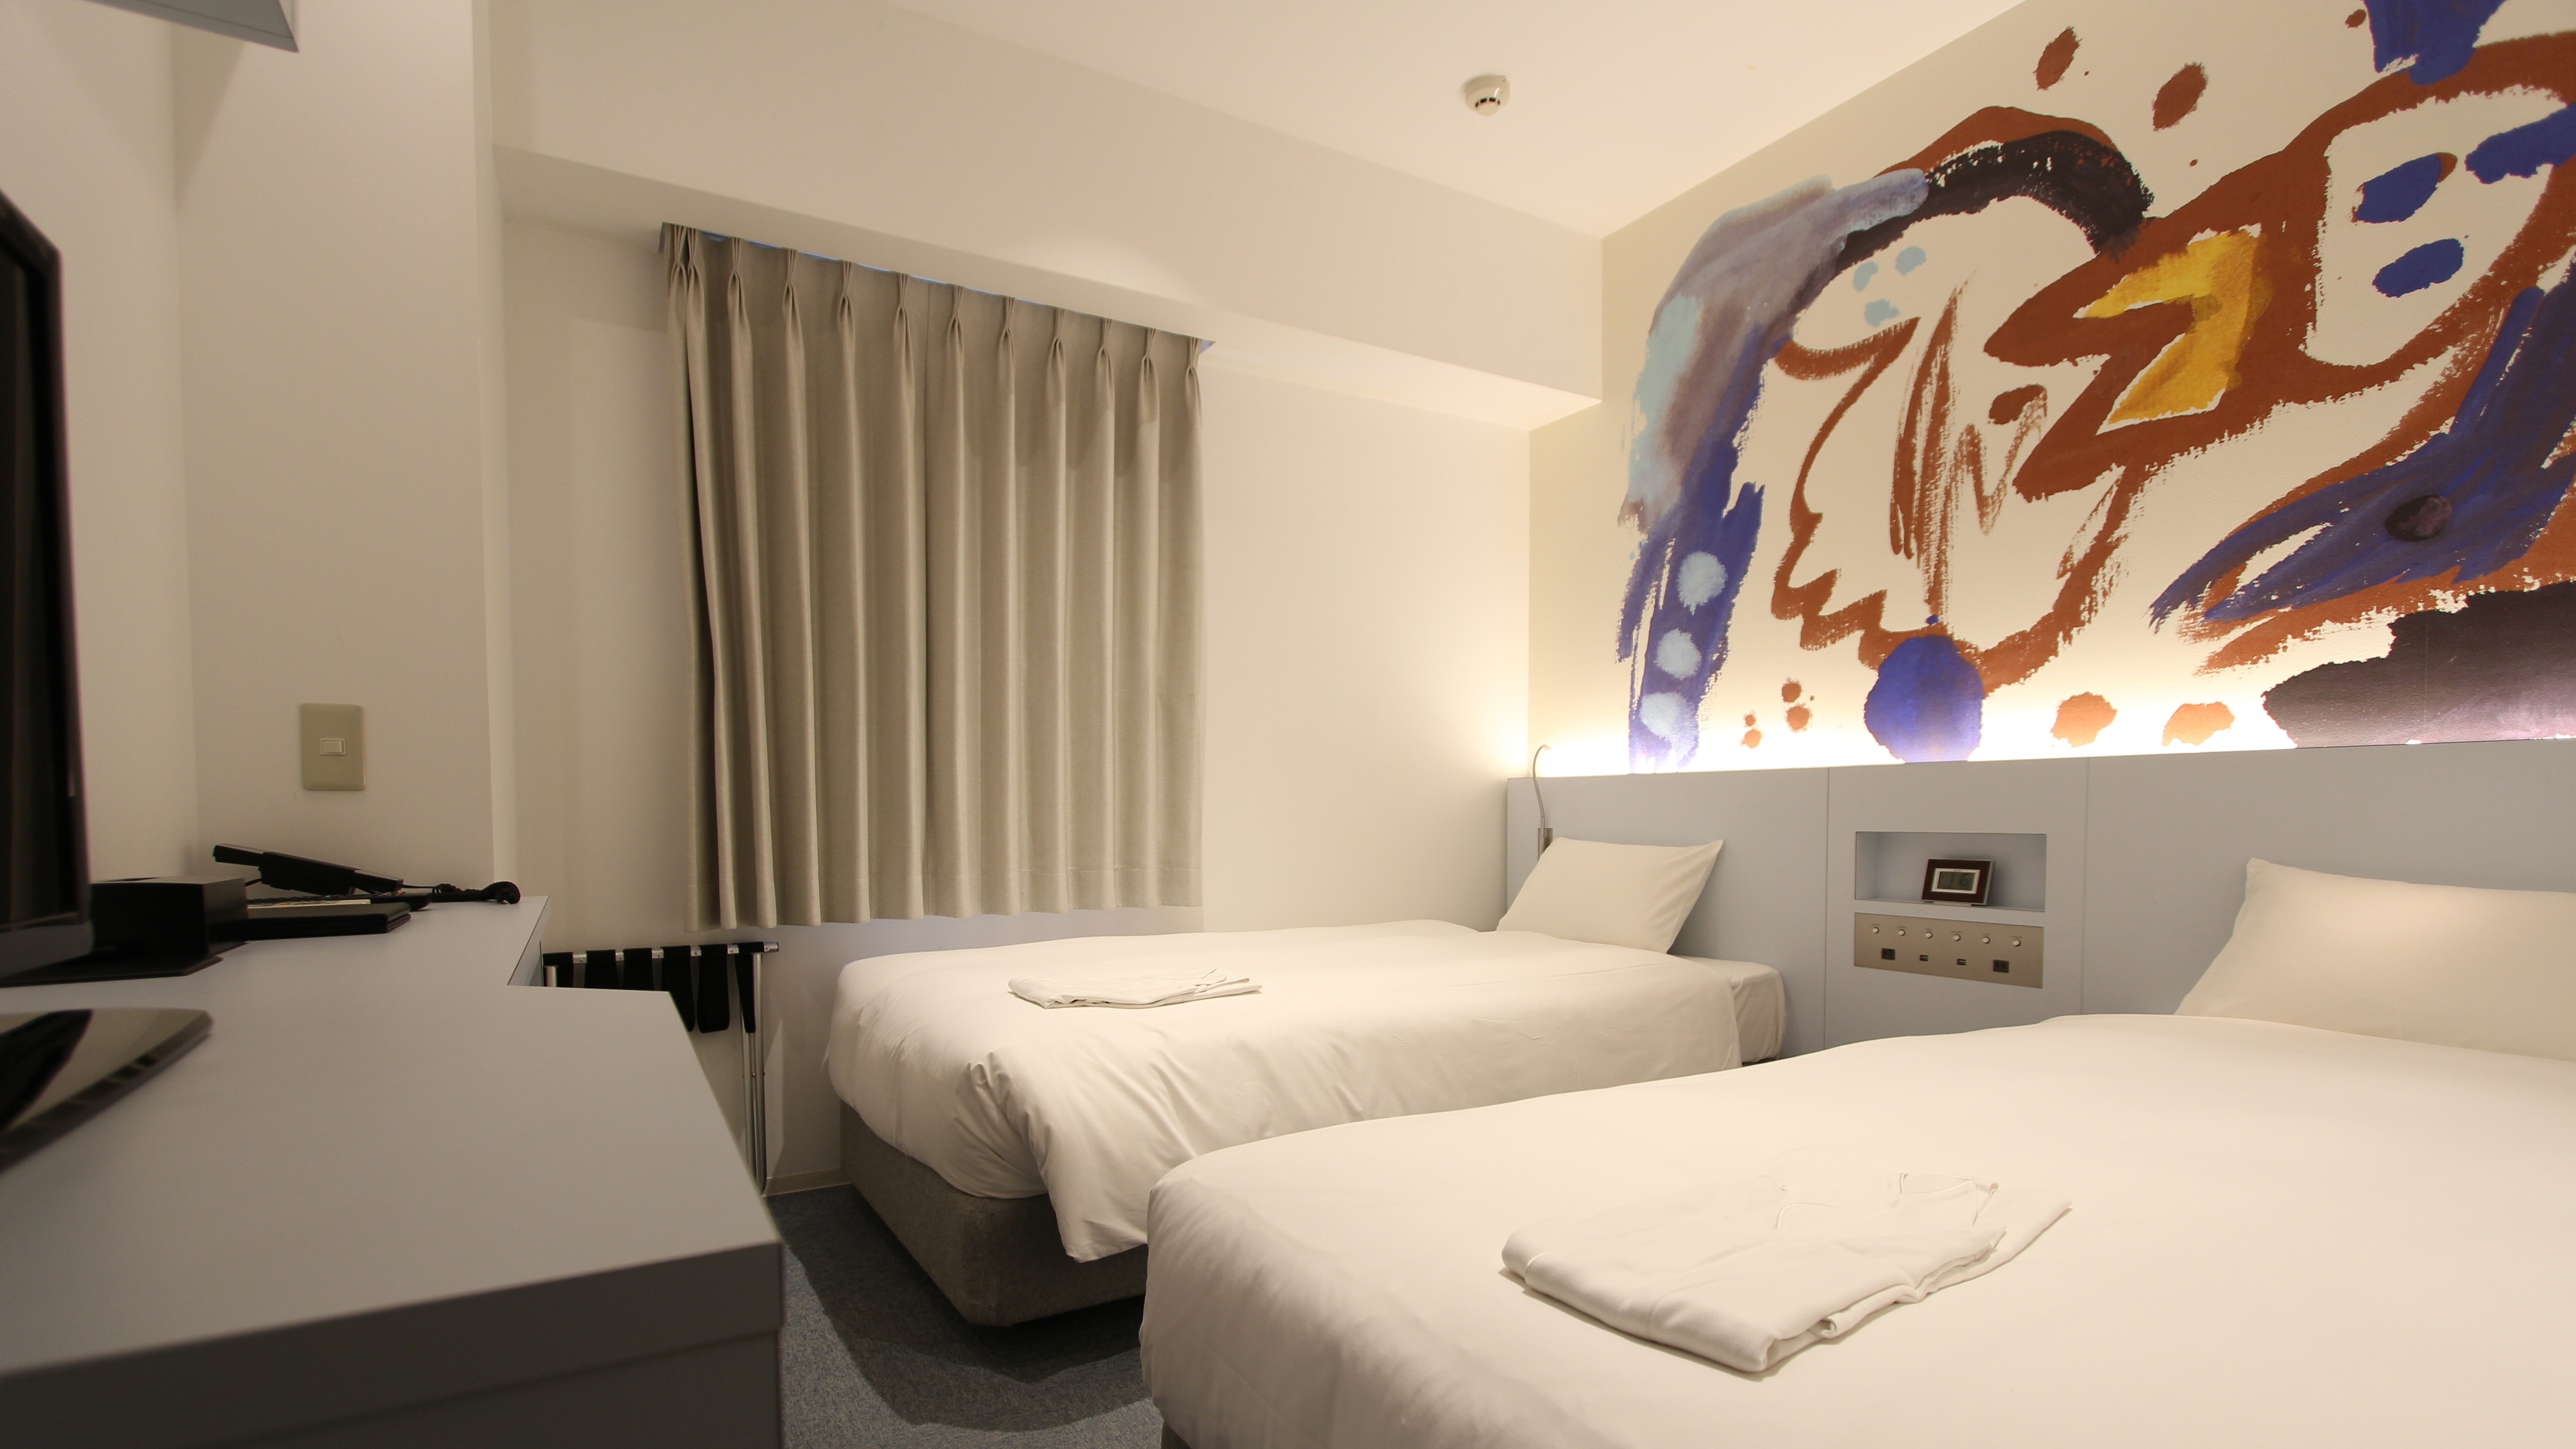 เตียงแฝดขนาดกลาง * การออกแบบงานศิลปะแตกต่างกันไปขึ้นอยู่กับห้องพัก